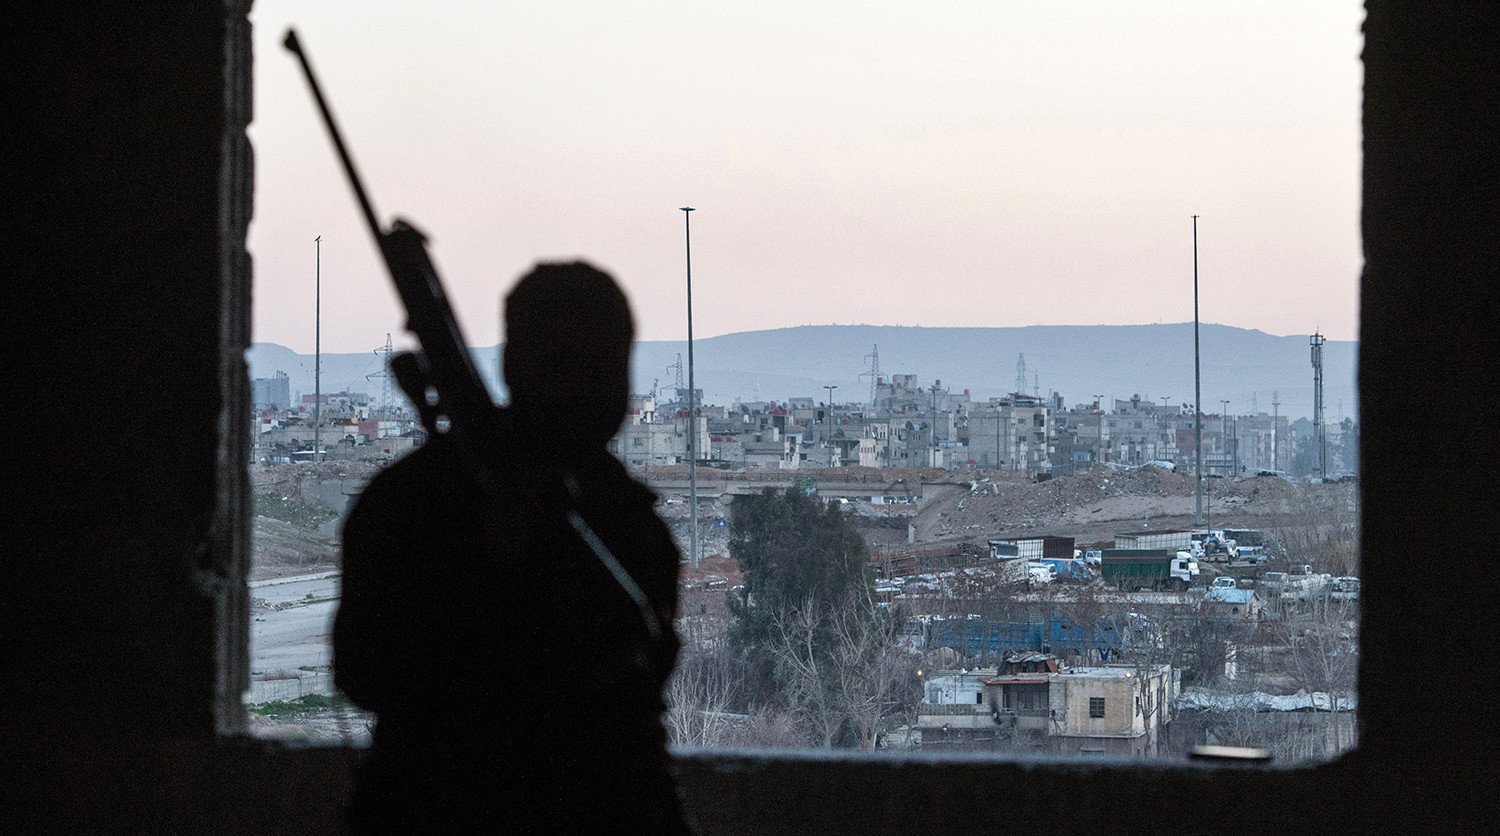  Բրիտանական հետախուզությունը Սիրիայում համագործակցության առաջարկ է արել ահաբեկիչներին